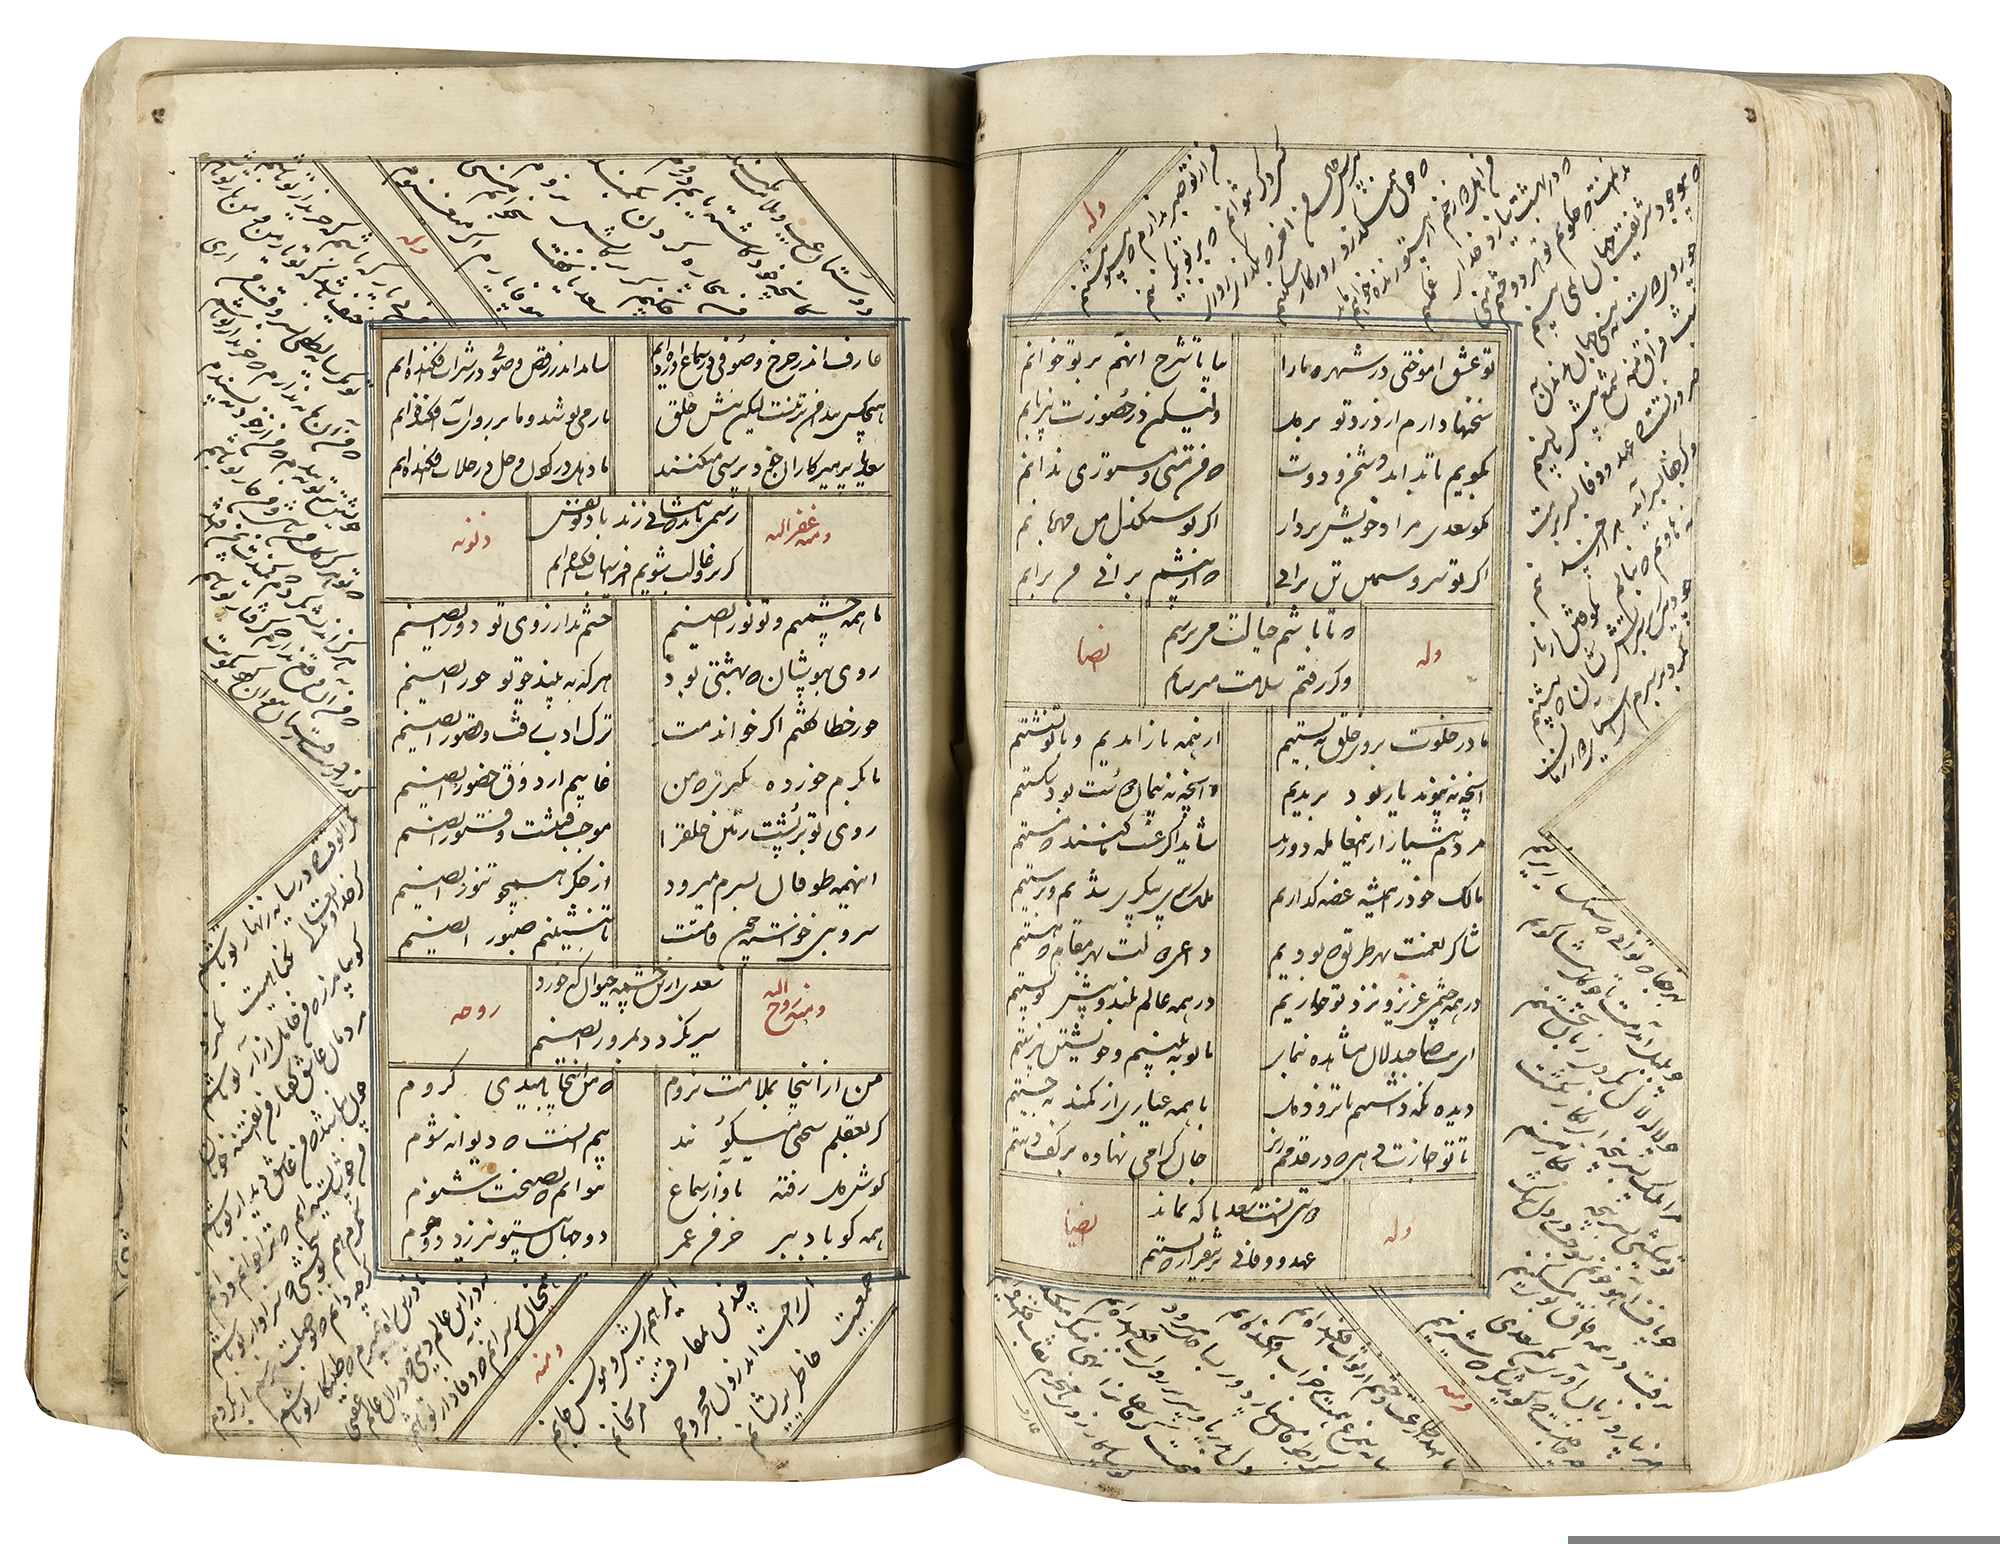 A COMPLETE WORK OF SAADI, KOLIYAT SAADI, PERSIA QAJAR, 1235 AH/1819 AD - Image 16 of 22